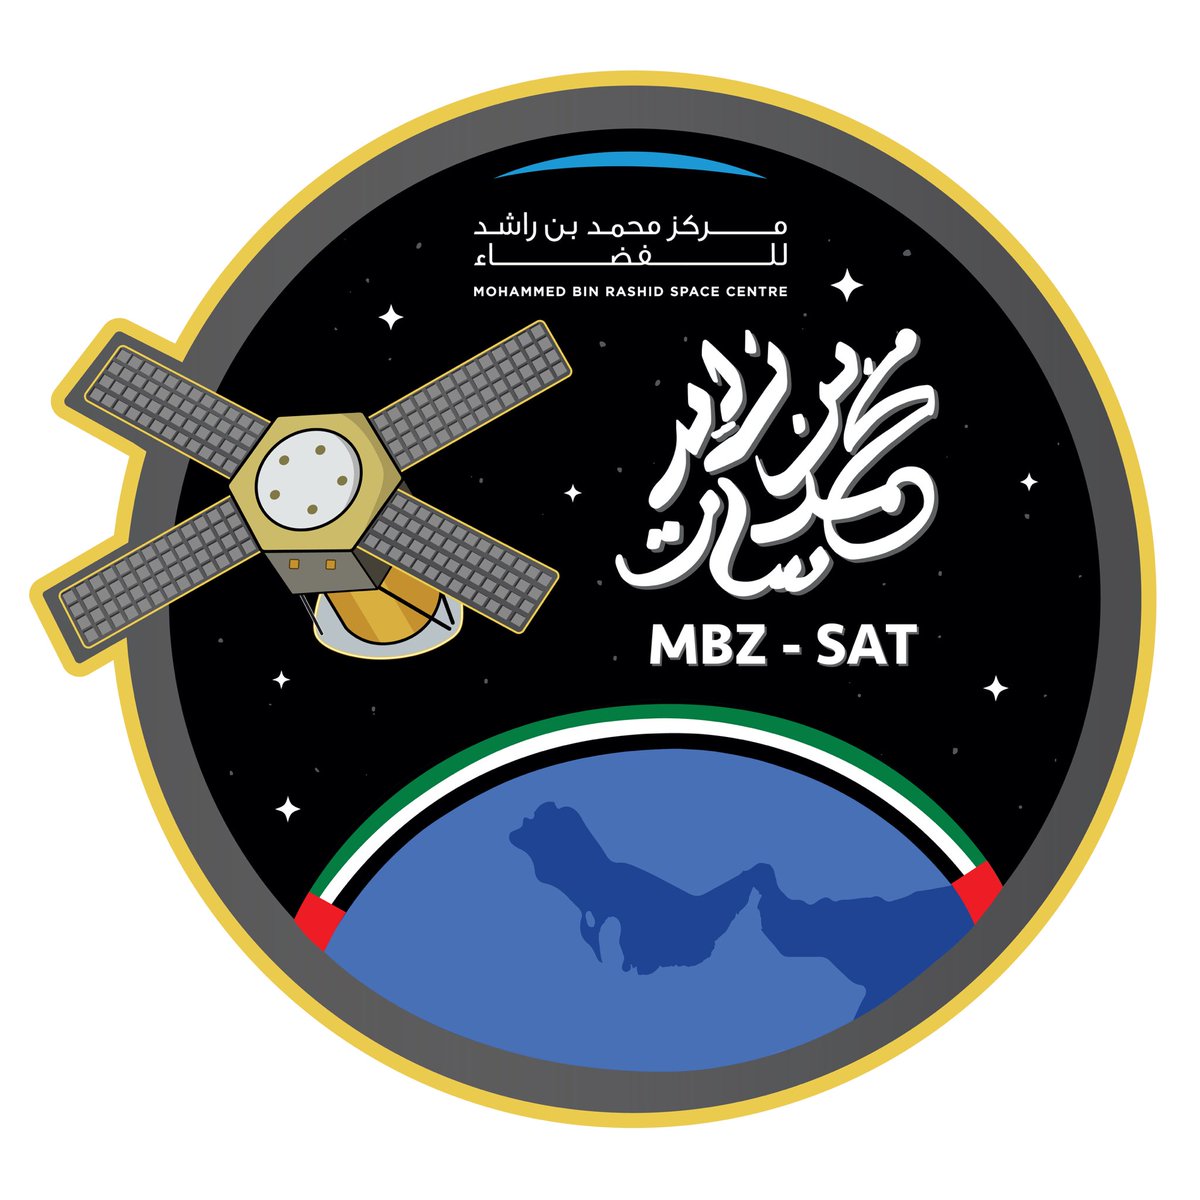 تُظهر هذه الصورة شعار مهمة 'محمد بن زايد سات'، حيث تبرز فيه 7 نجوم ترمز إلى إمارات الدولة إلى جانب العلم، والخريطة، ورسم للقمر الاصطناعي، واسمه المكتوب بفن الخط العربي.